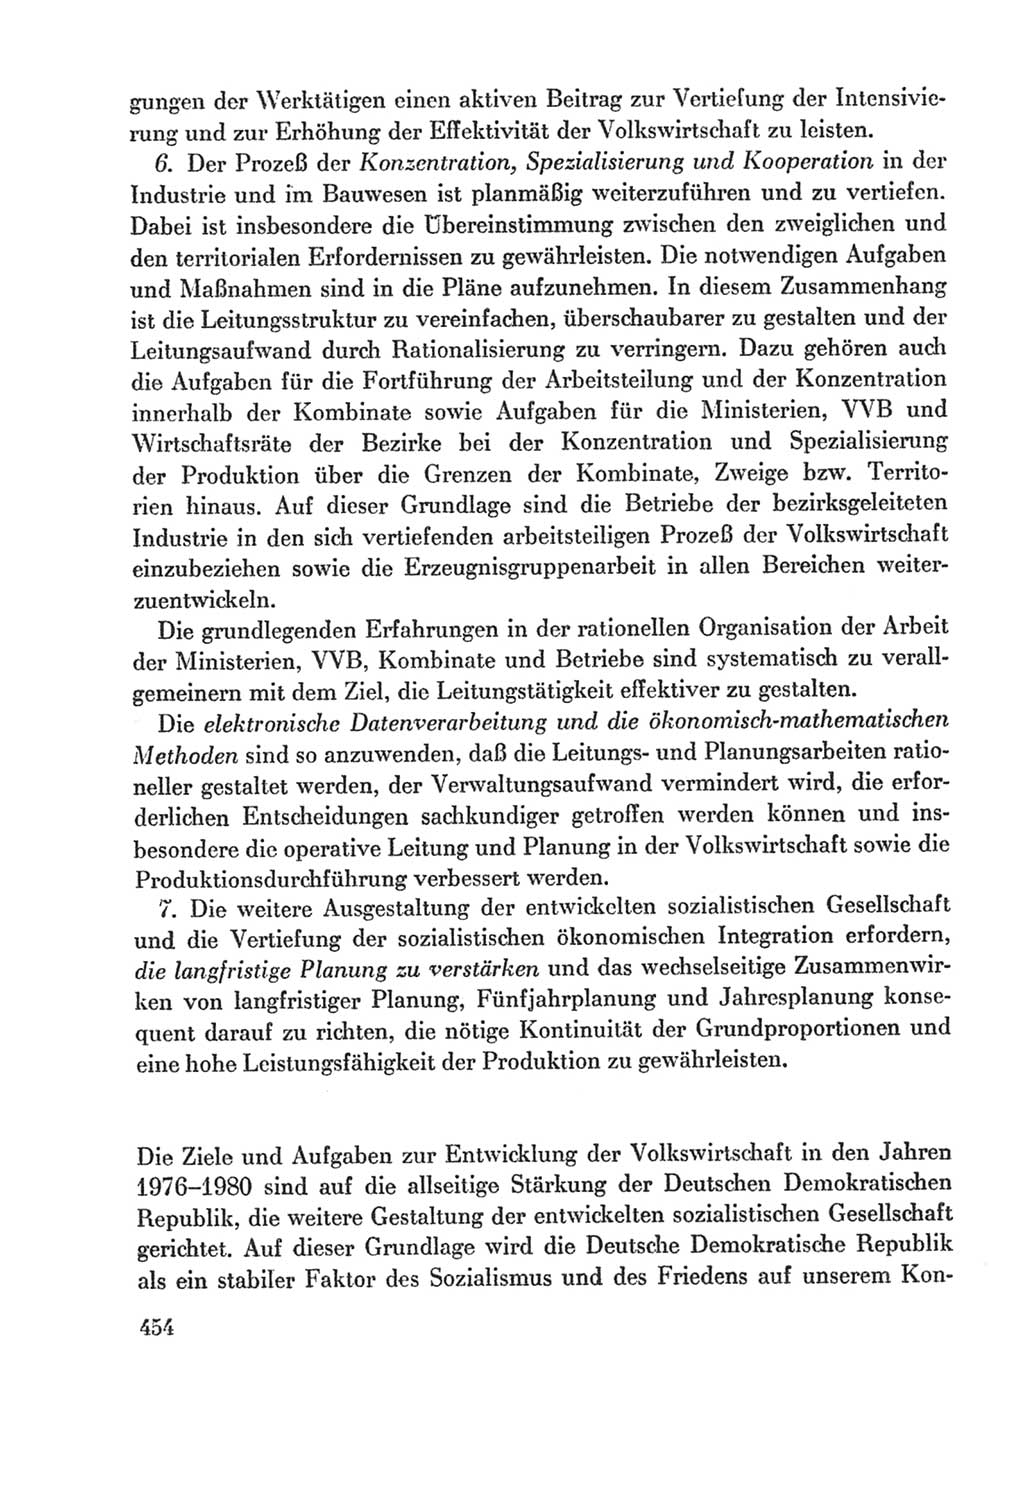 Protokoll der Verhandlungen des Ⅸ. Parteitages der Sozialistischen Einheitspartei Deutschlands (SED) [Deutsche Demokratische Republik (DDR)] 1976, Band 2, Seite 454 (Prot. Verh. Ⅸ. PT SED DDR 1976, Bd. 2, S. 454)